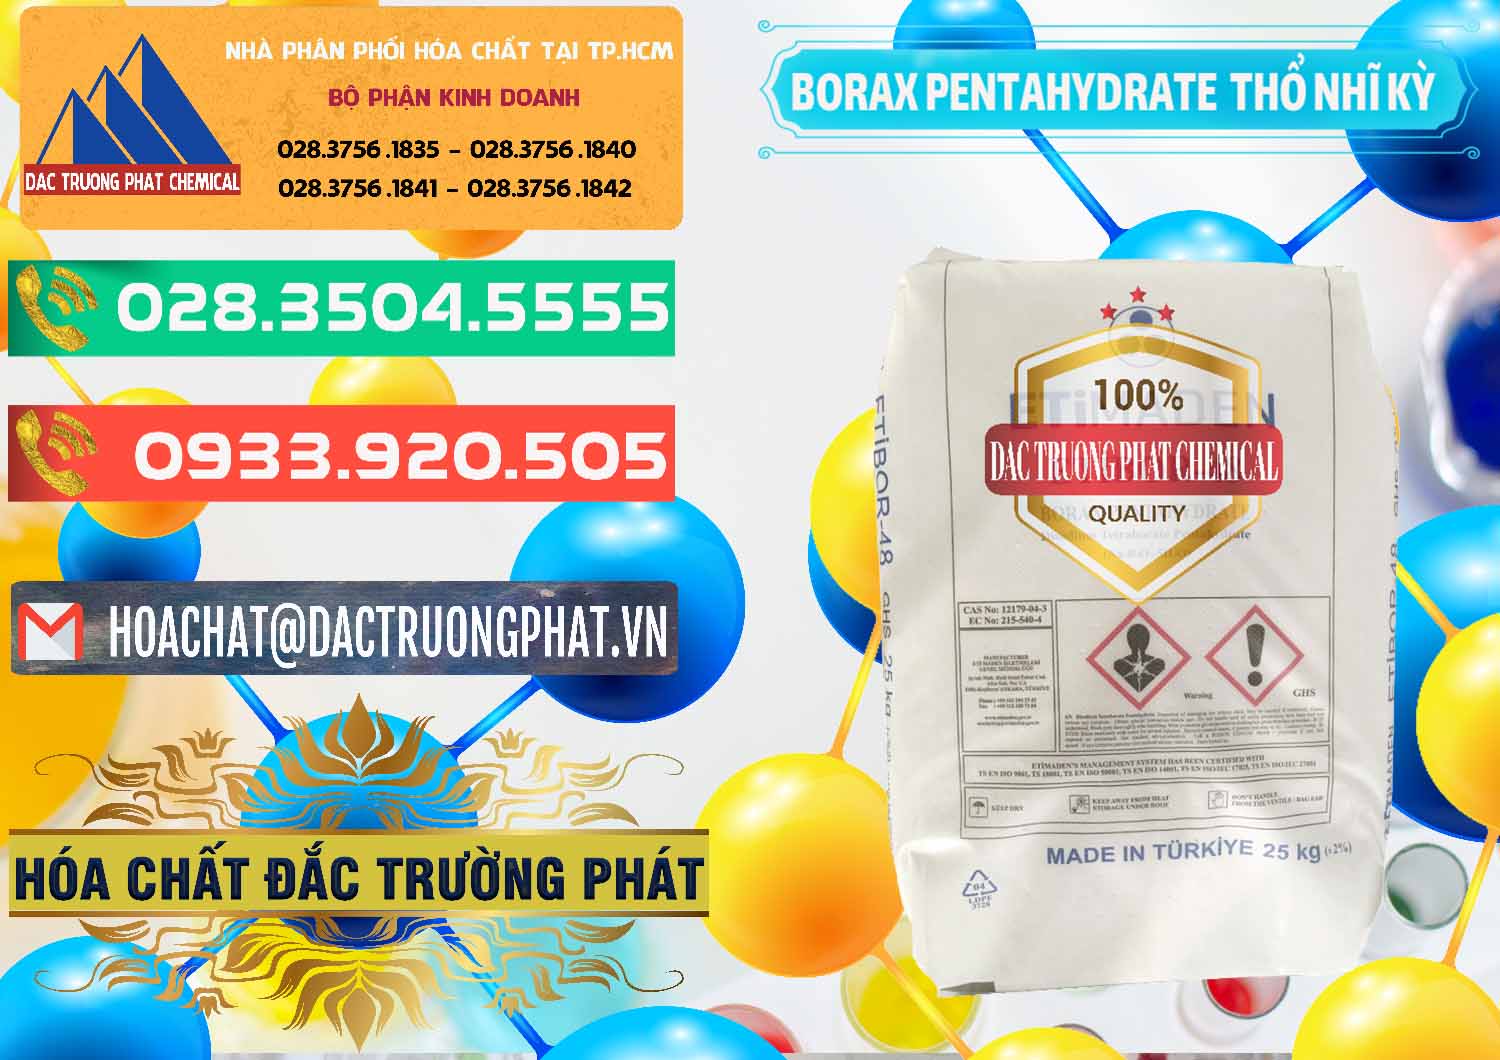 Nơi cung cấp & bán Borax Pentahydrate Thổ Nhĩ Kỳ Turkey - 0431 - Chuyên phân phối ( cung cấp ) hóa chất tại TP.HCM - congtyhoachat.com.vn